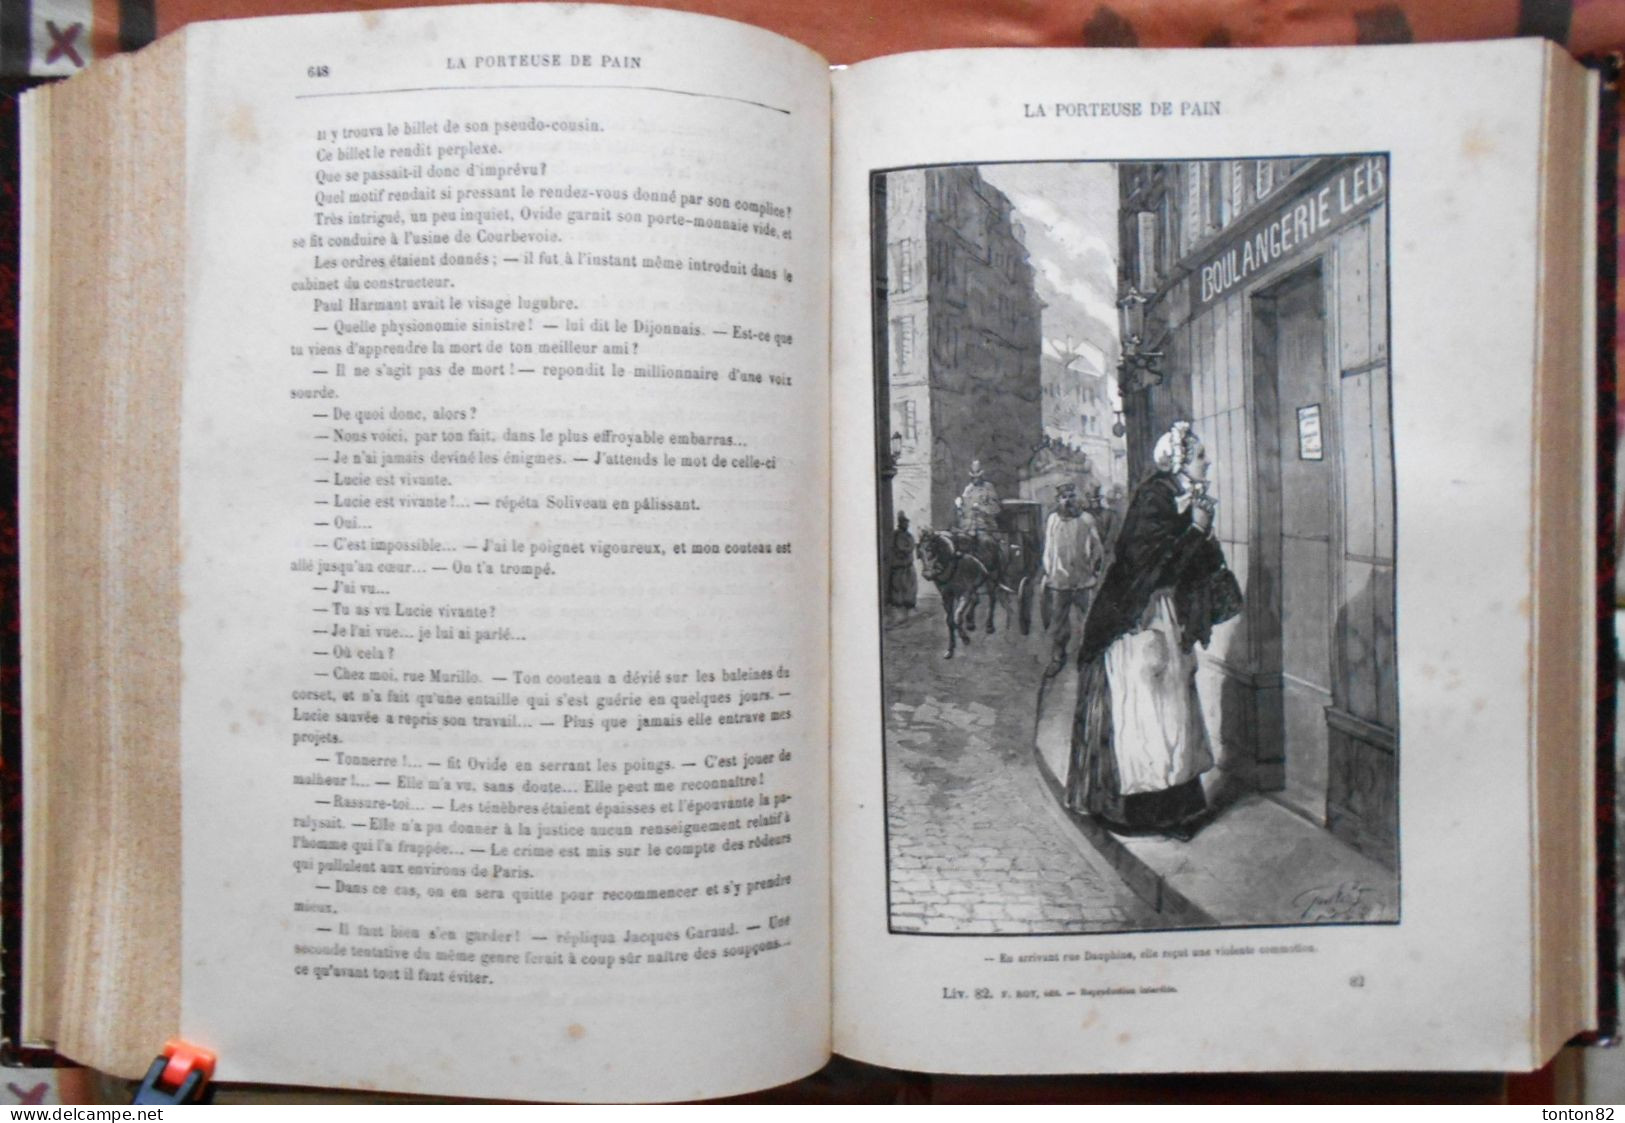 Xavier de Montépin -  La porteuse de pain - F. Roy, Libraire éditeur- ( 1890 ) - Version intégrale 1200 pages .